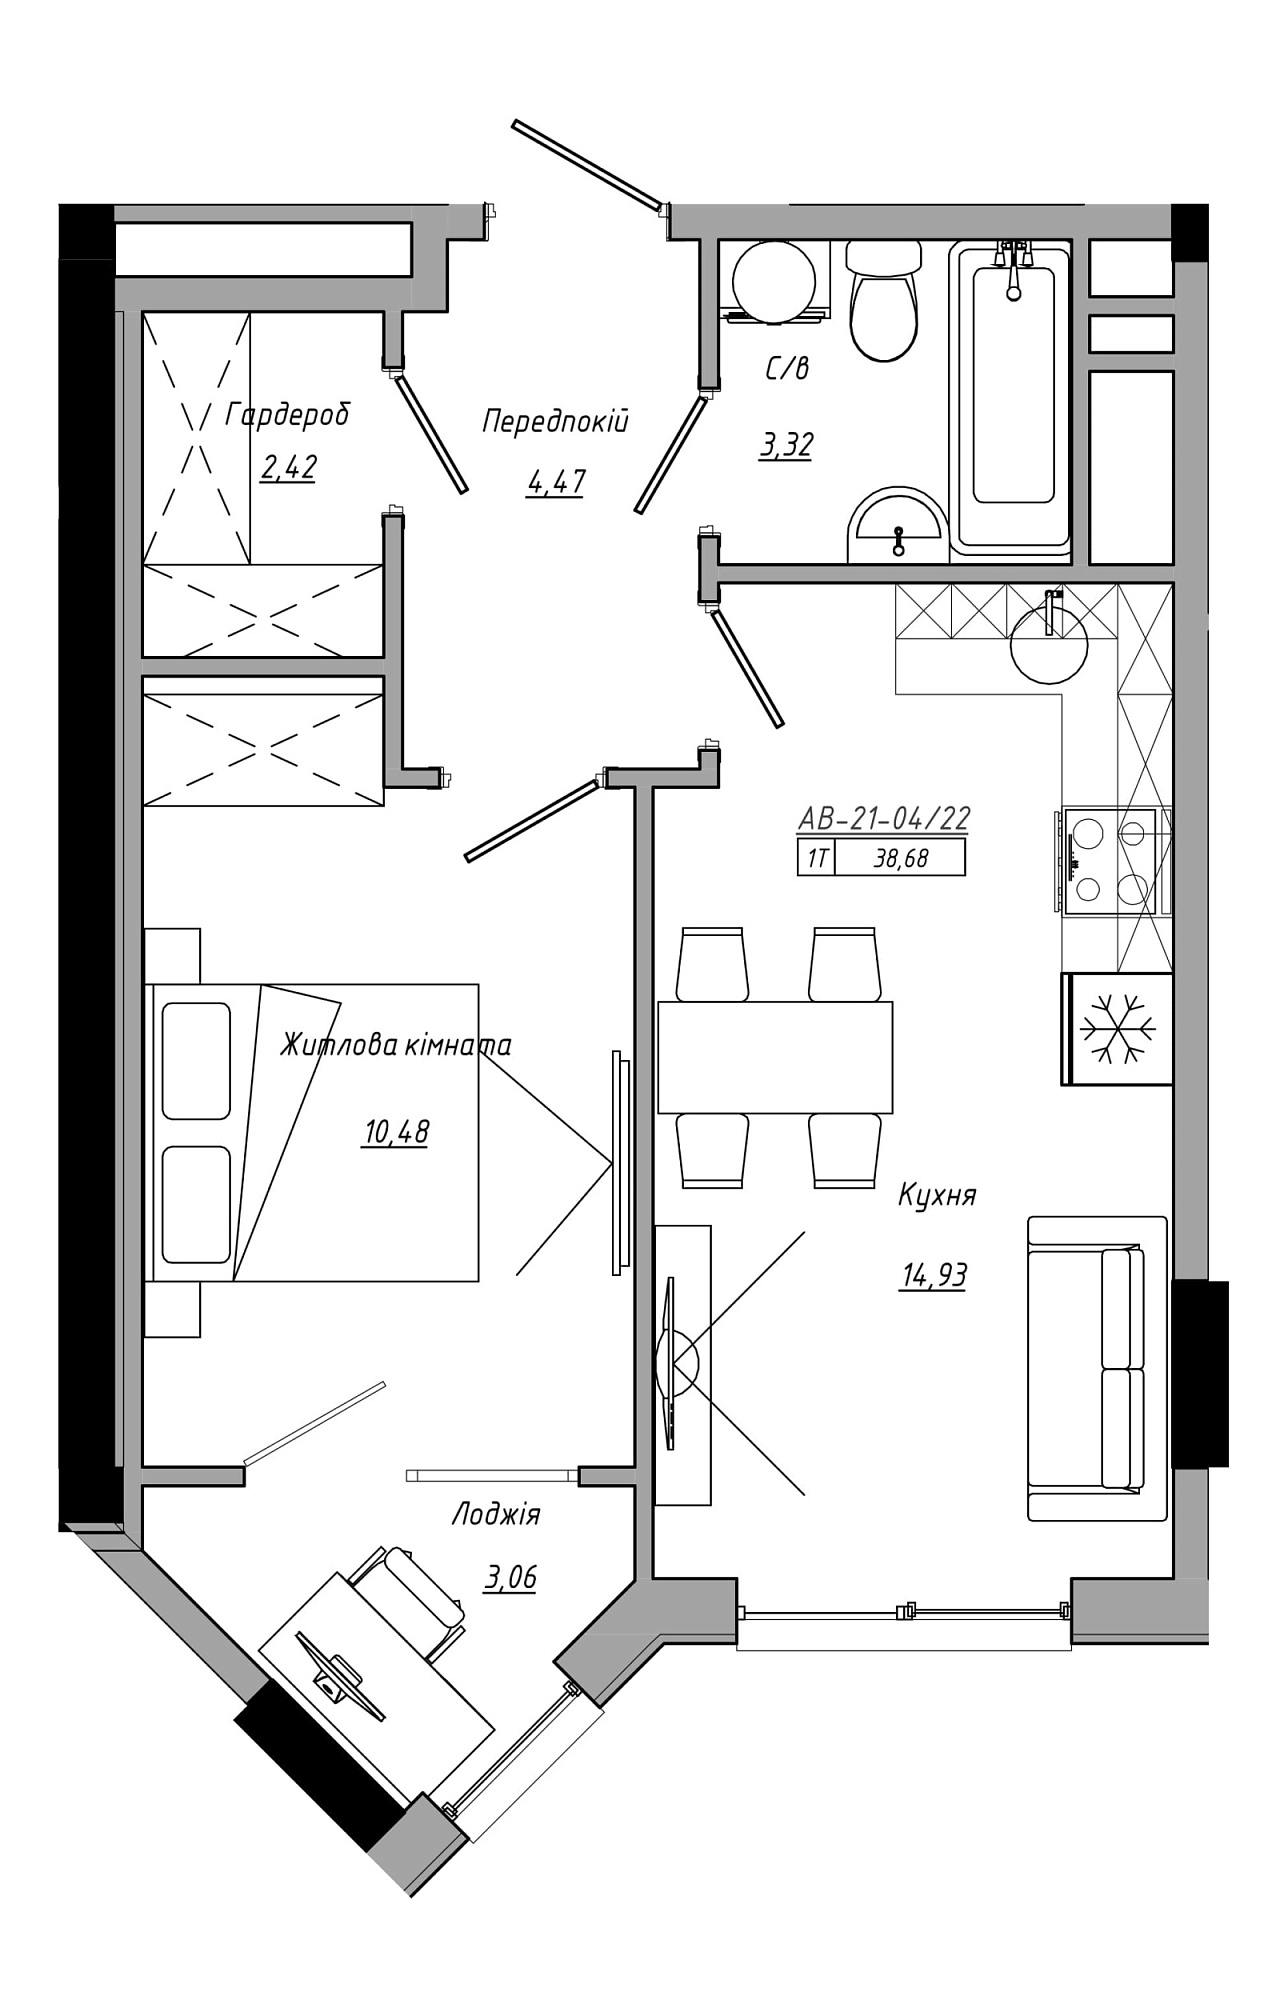 Планировка 1-к квартира площей 38.68м2, AB-21-04/00022.